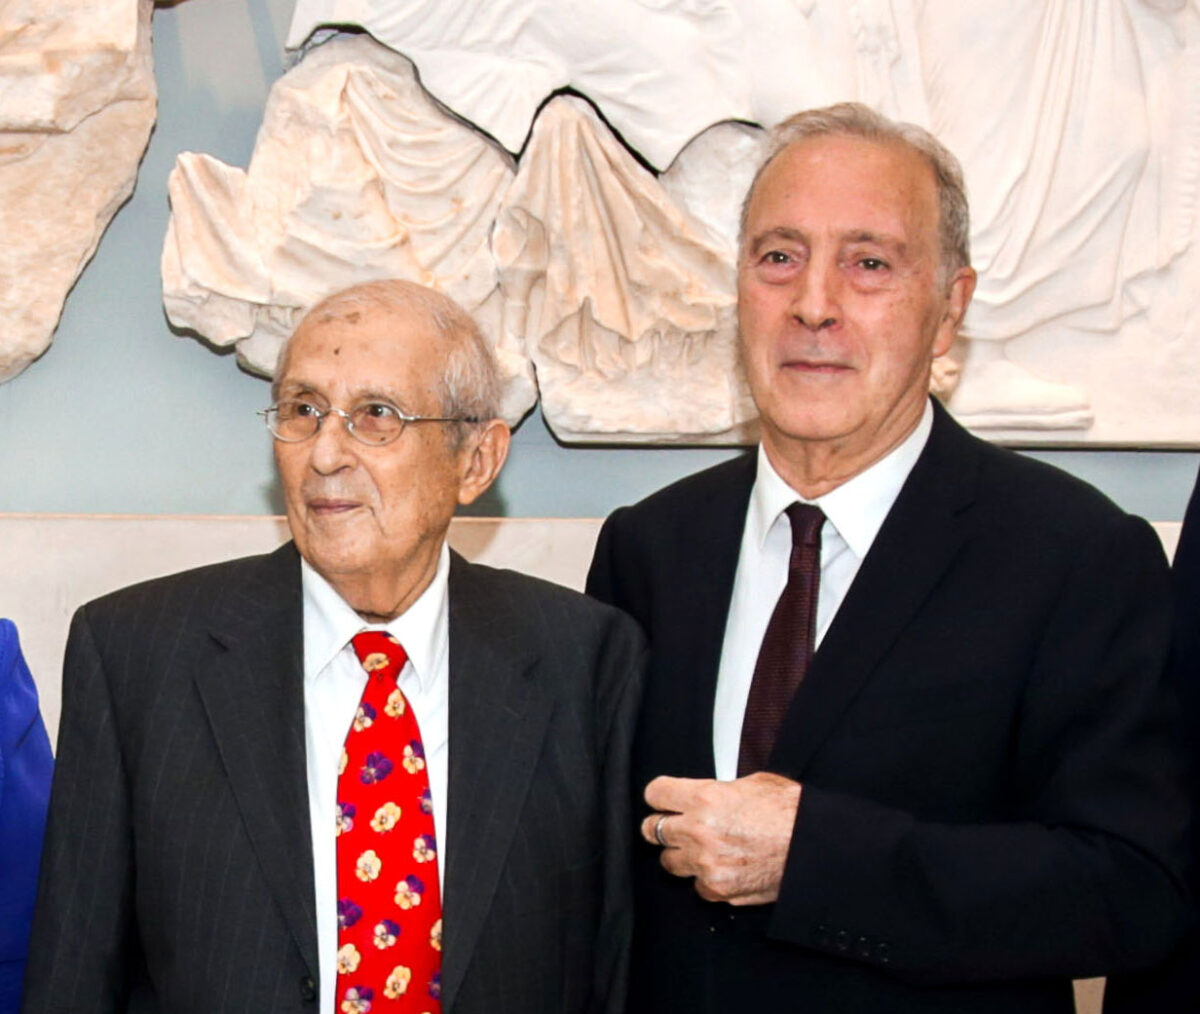 Ο Δημήτρης Παντερμαλής και ο Γενικός Διευθυντής του Μουσείου Ακρόπολης, καθ. Νικόλαος Χρ. Σταμπολίδης στο Μουσείο Ακρόπολης τον Ιούνιο του 2022 (φωτ.: Μουσείο Ακρόπολης).